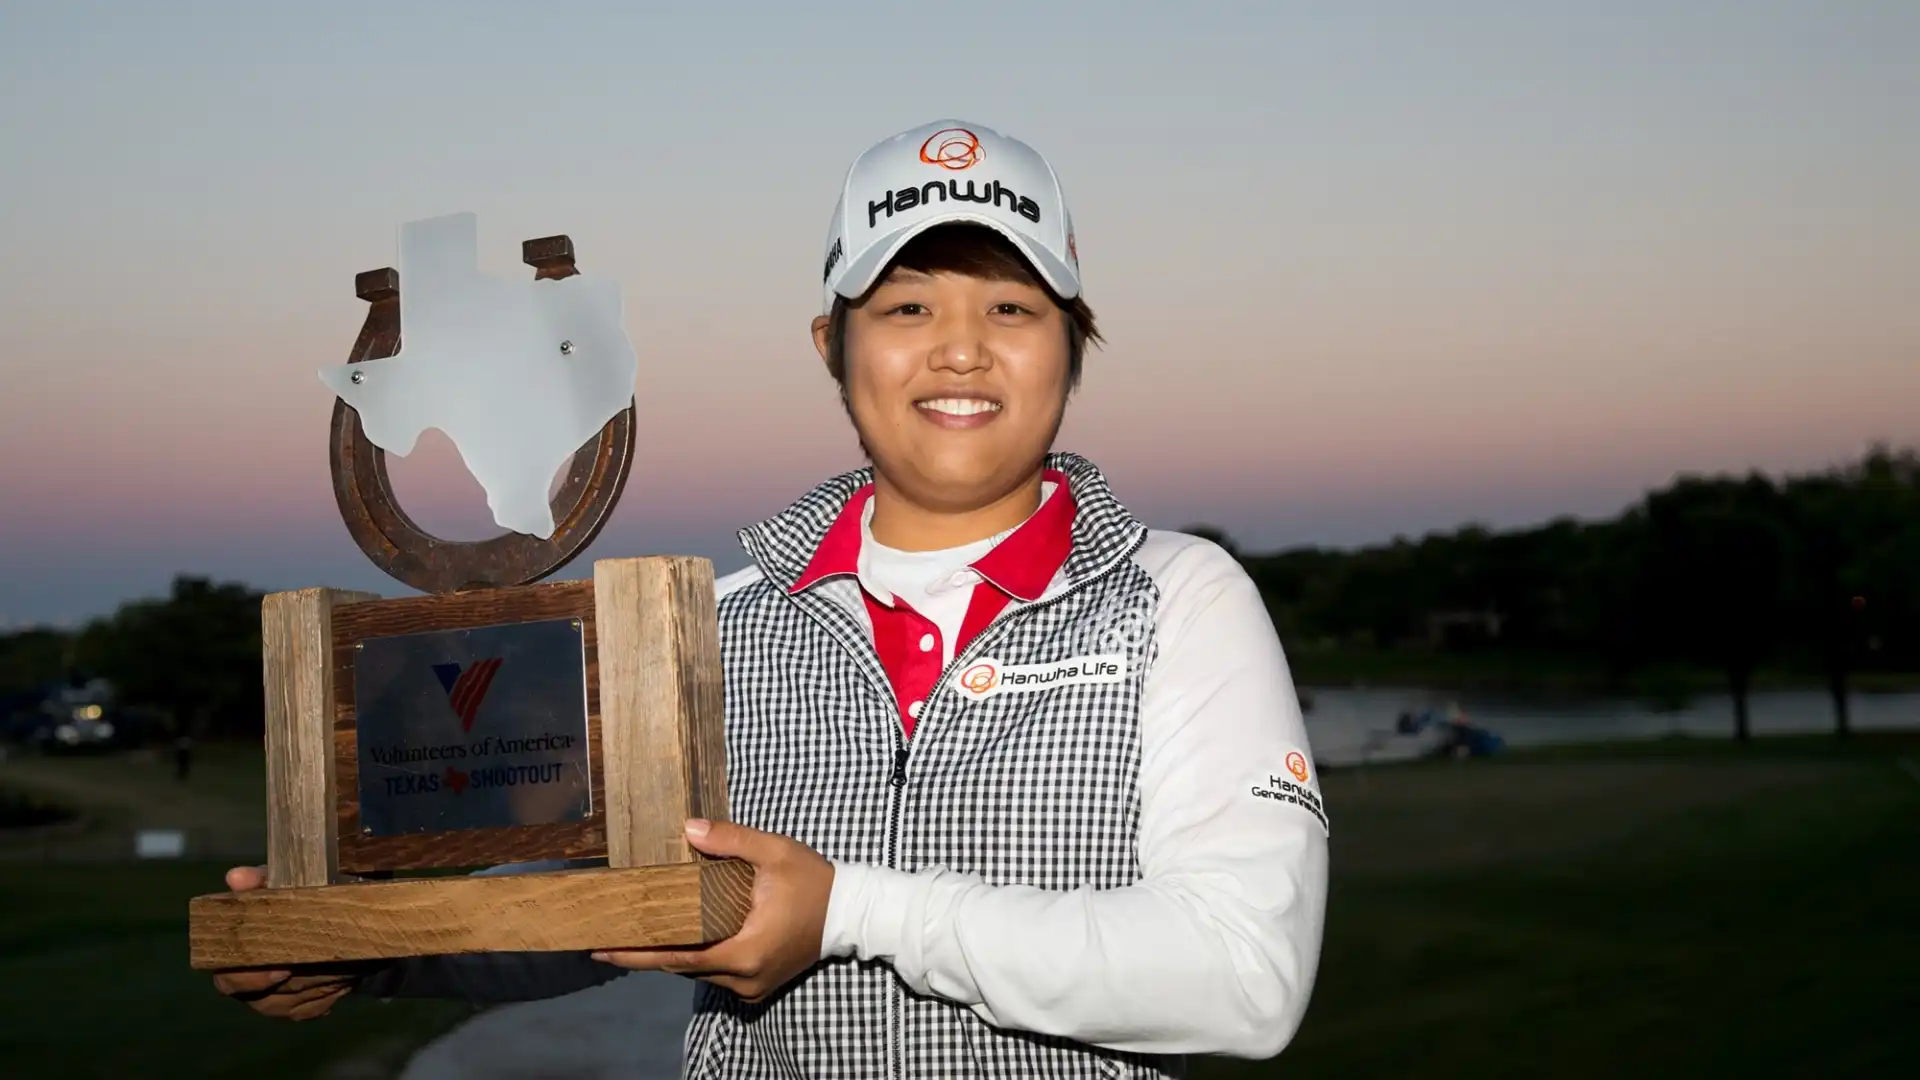 Professionista dal 2010, Haru Nomura ha vinto sei tornei internazionali in carriera, 3 nel circuito LPGA